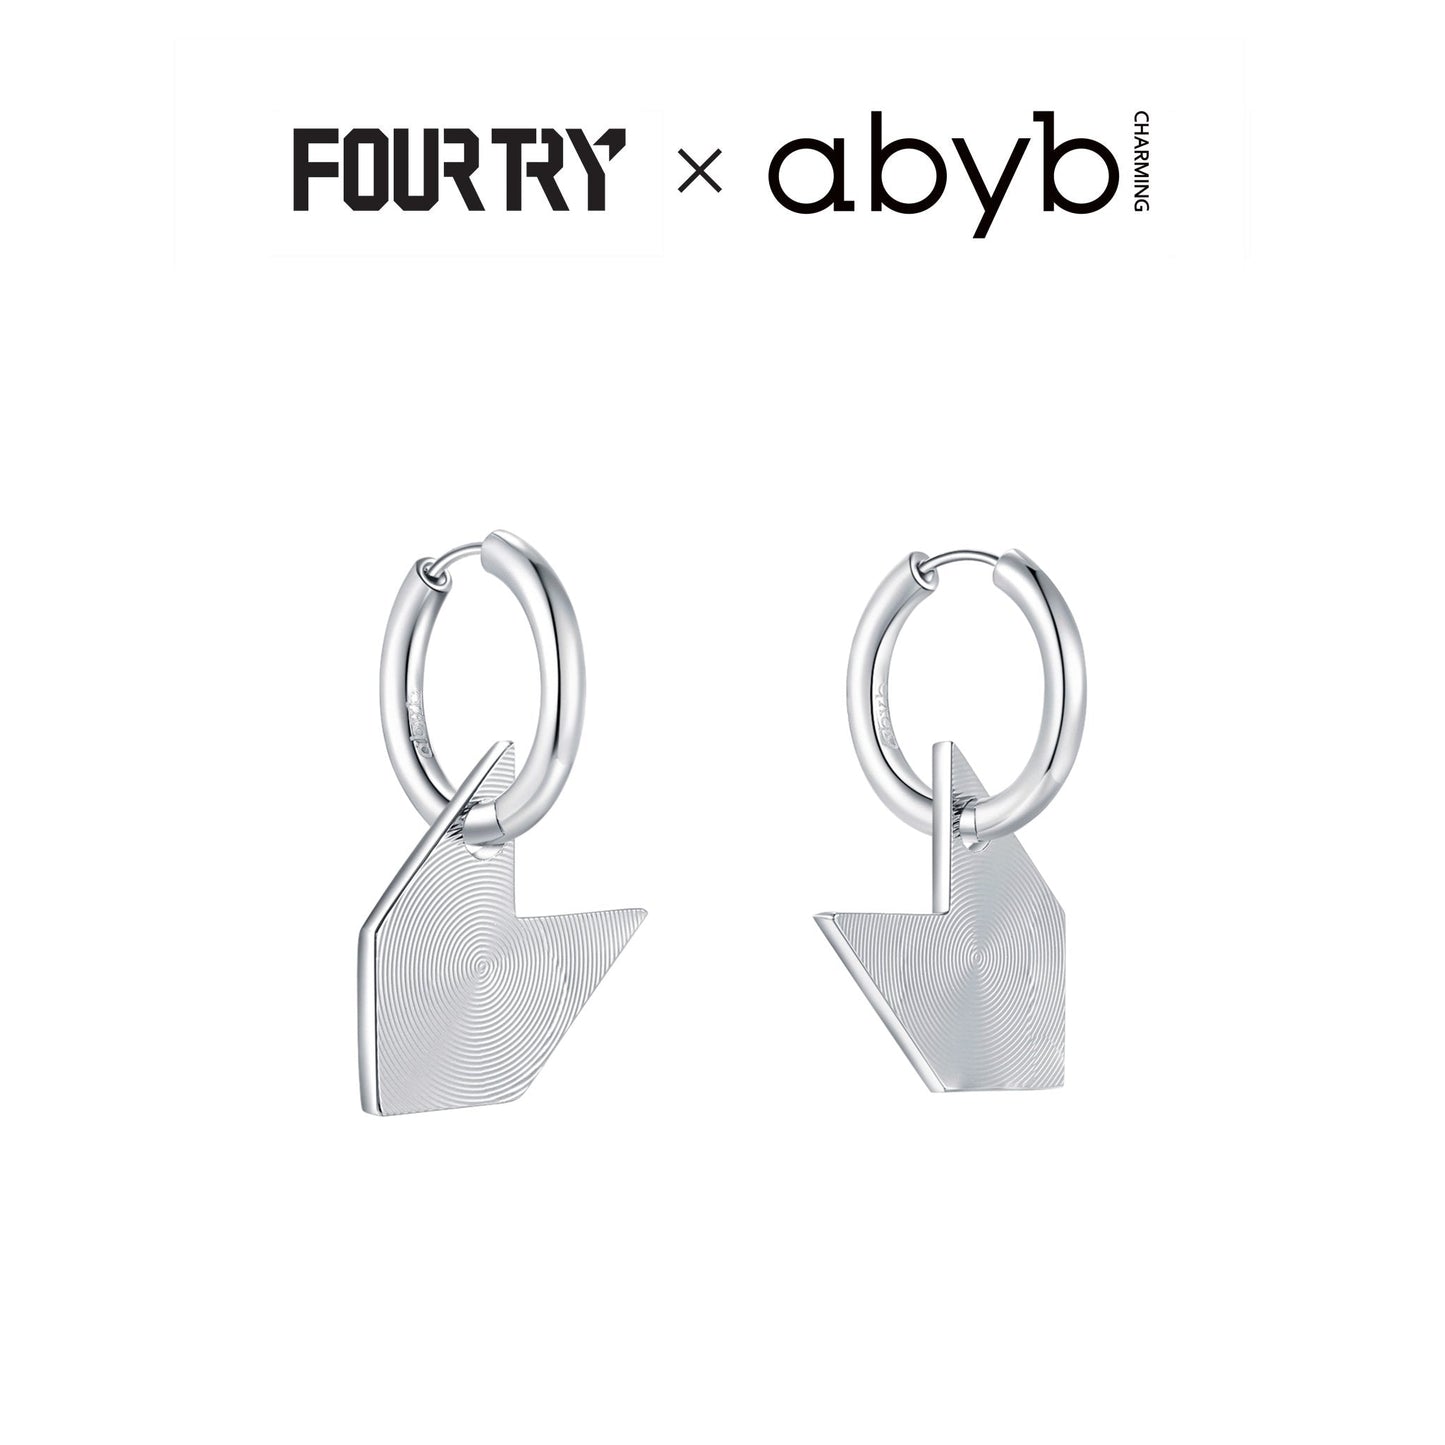 Abyb Charming Arrow of Destiny Earrings - Fixxshop